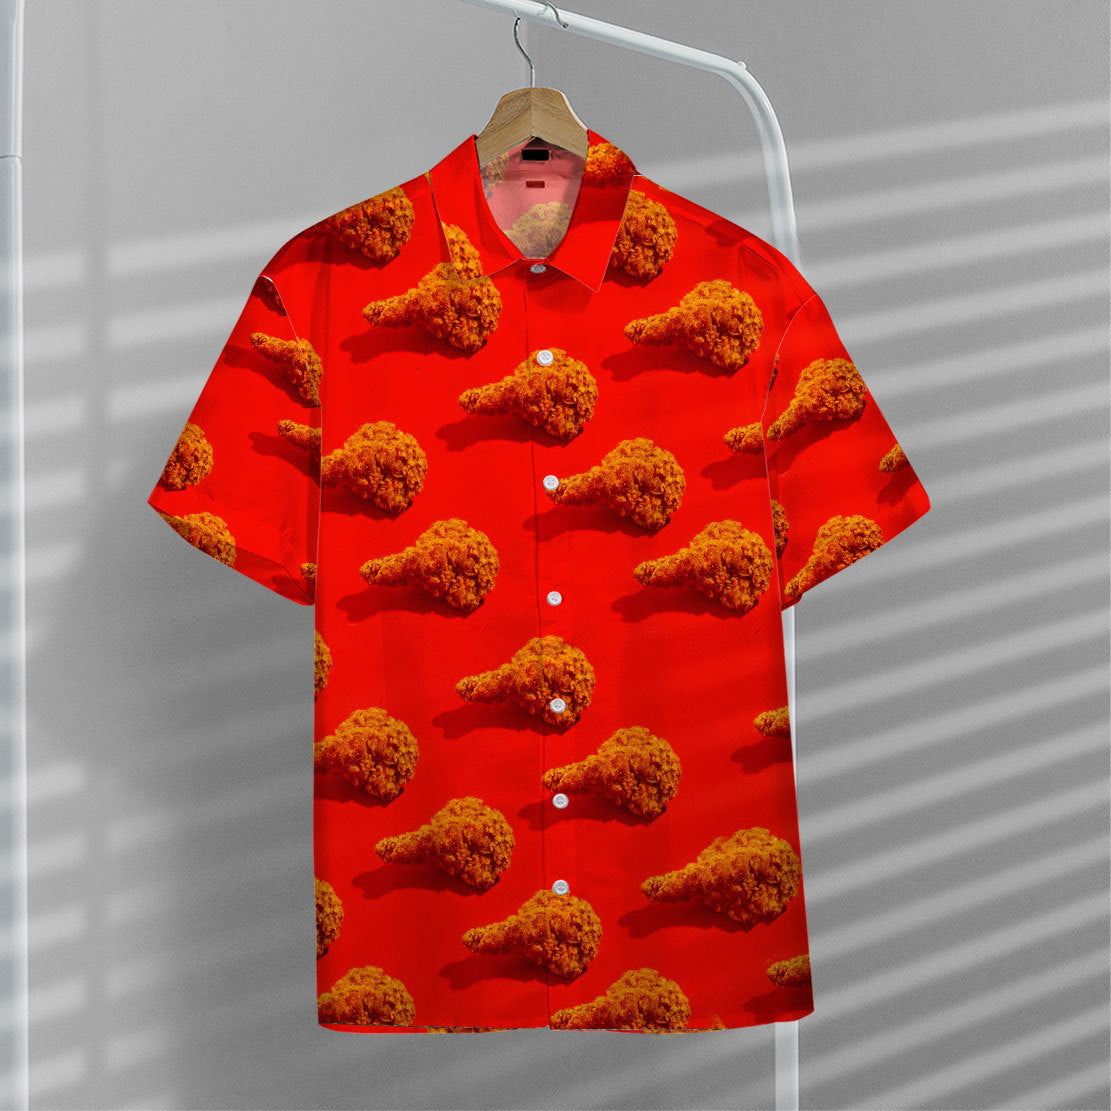 Fried Chicken Hawaii Shirt